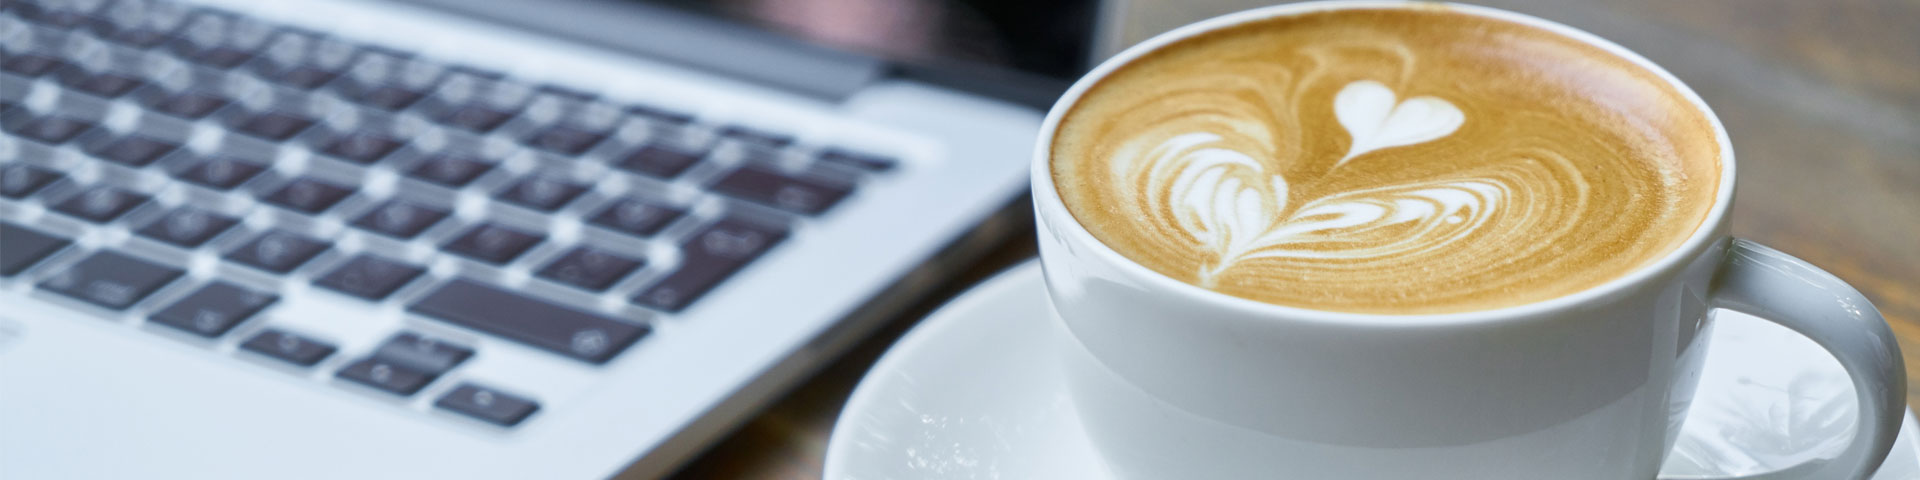 A latte next to an open laptop